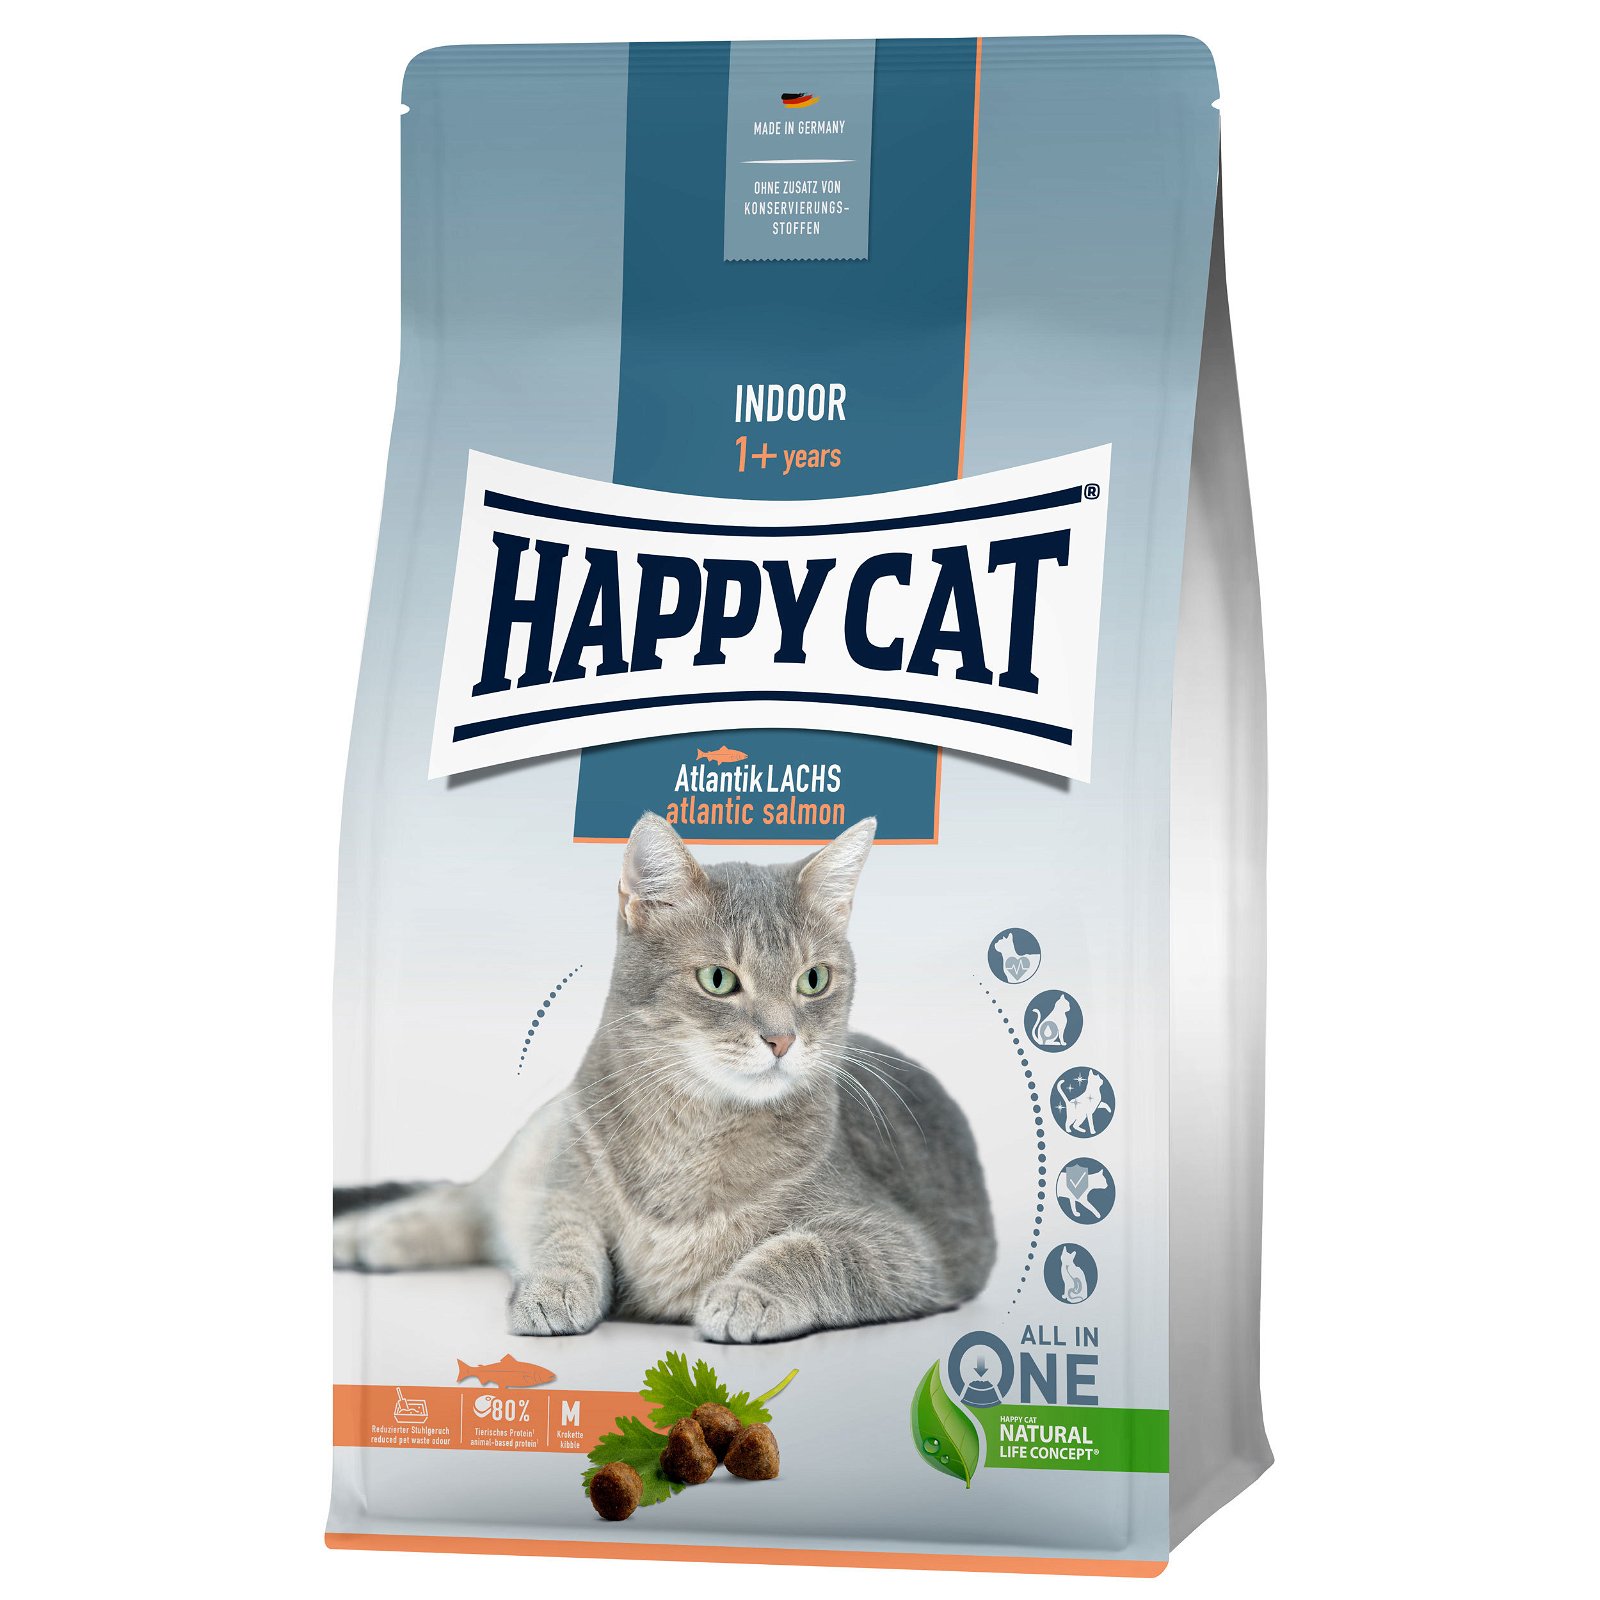 Trockenfutter, Happy Cat Indoor, Atlantik-Lachs, 300 g